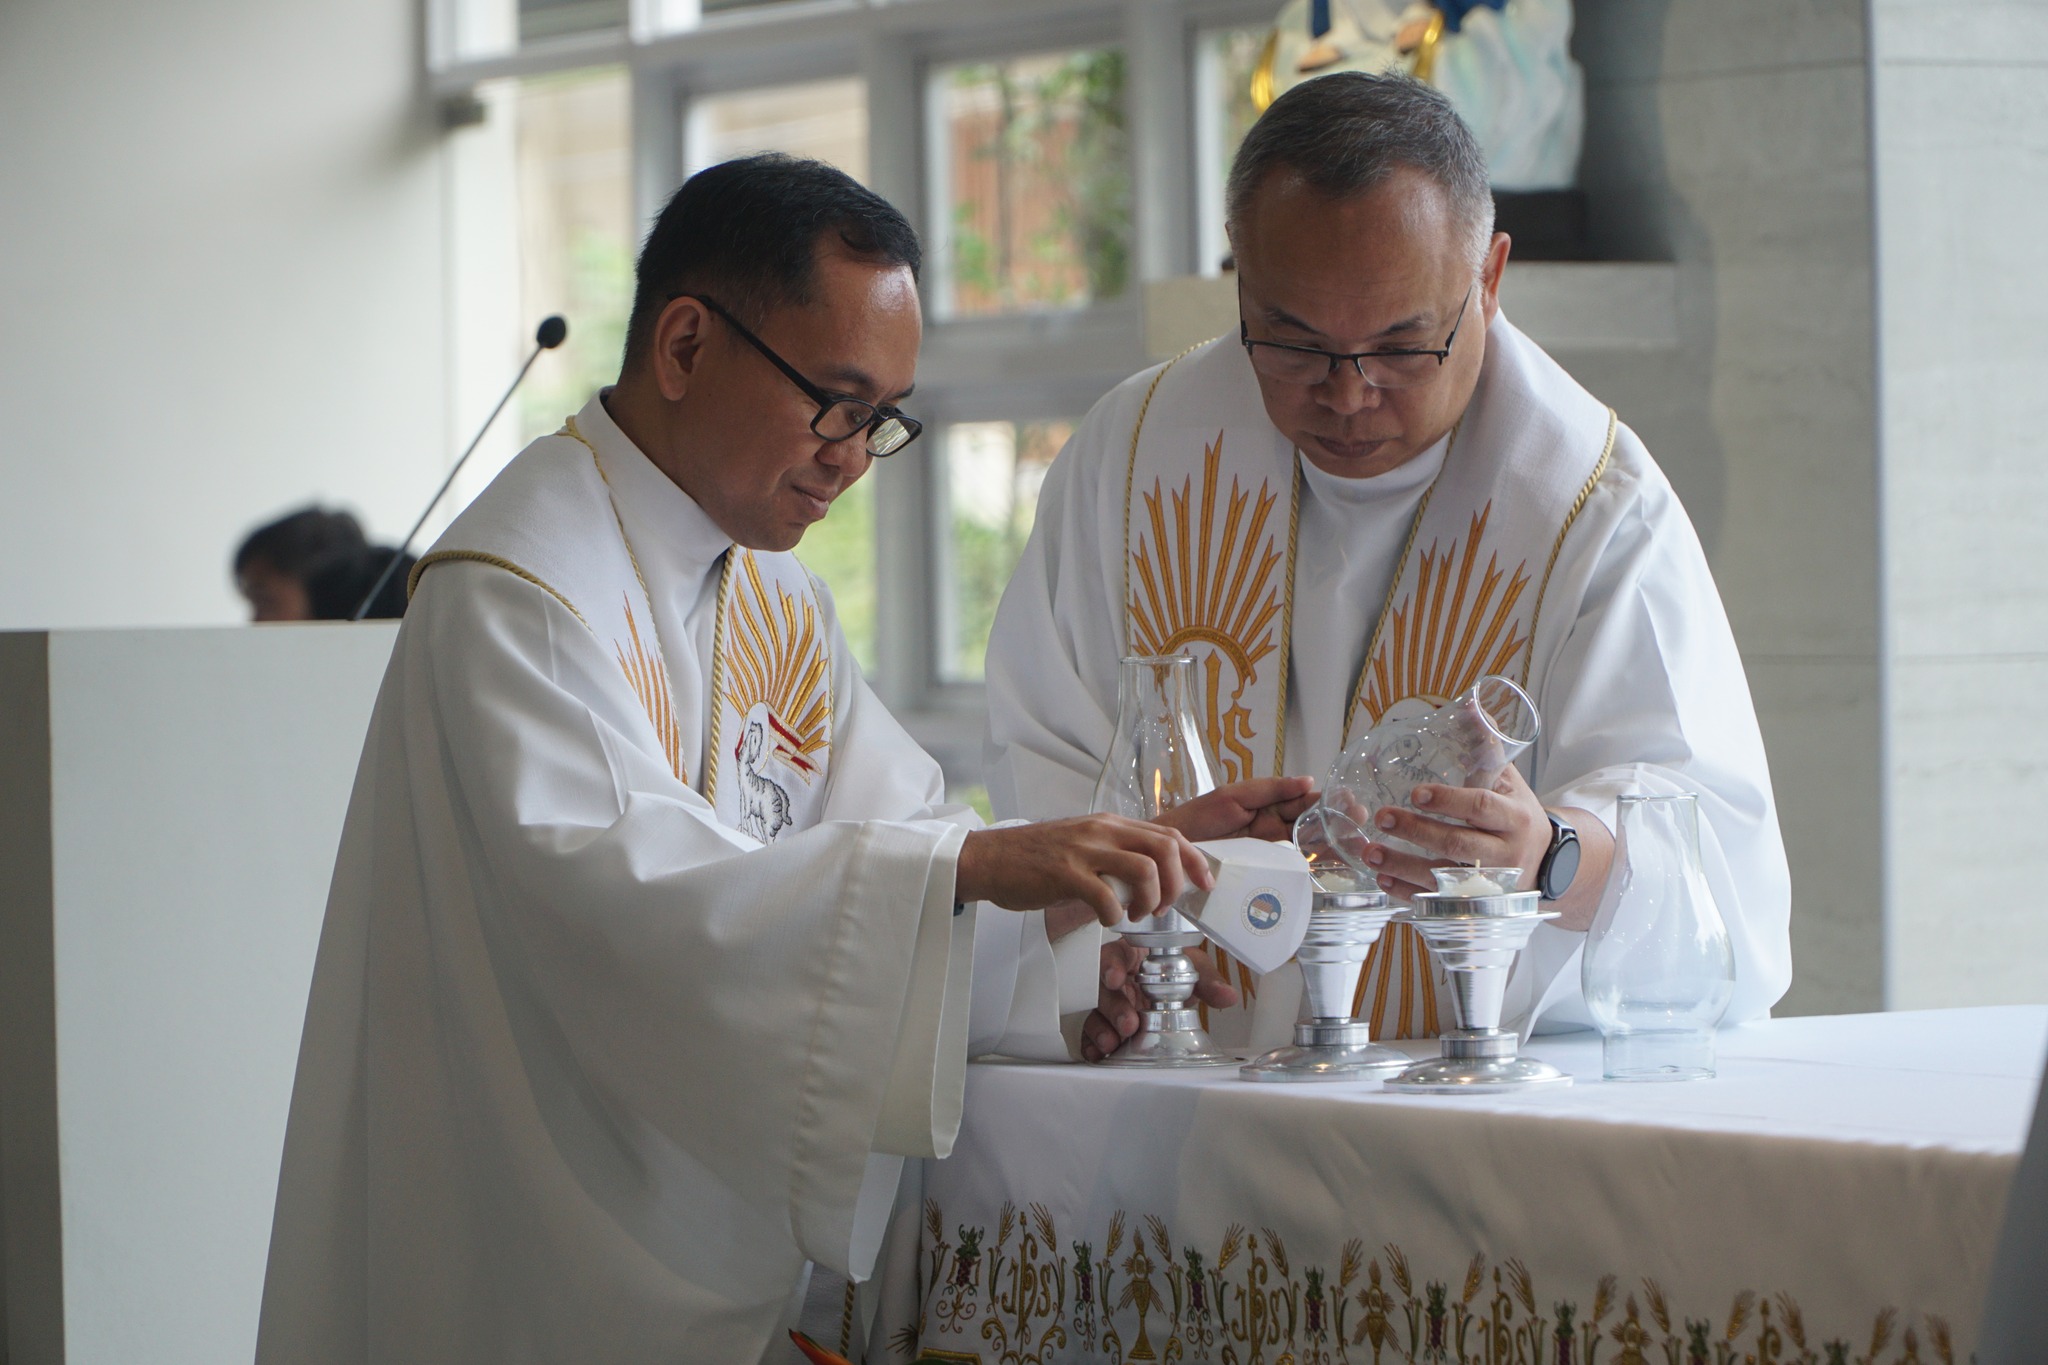  Fr Mamert Mañus SJ (left) and Fr Jonjee Sumpaico SJ (right) during the Lighting of the Altar  